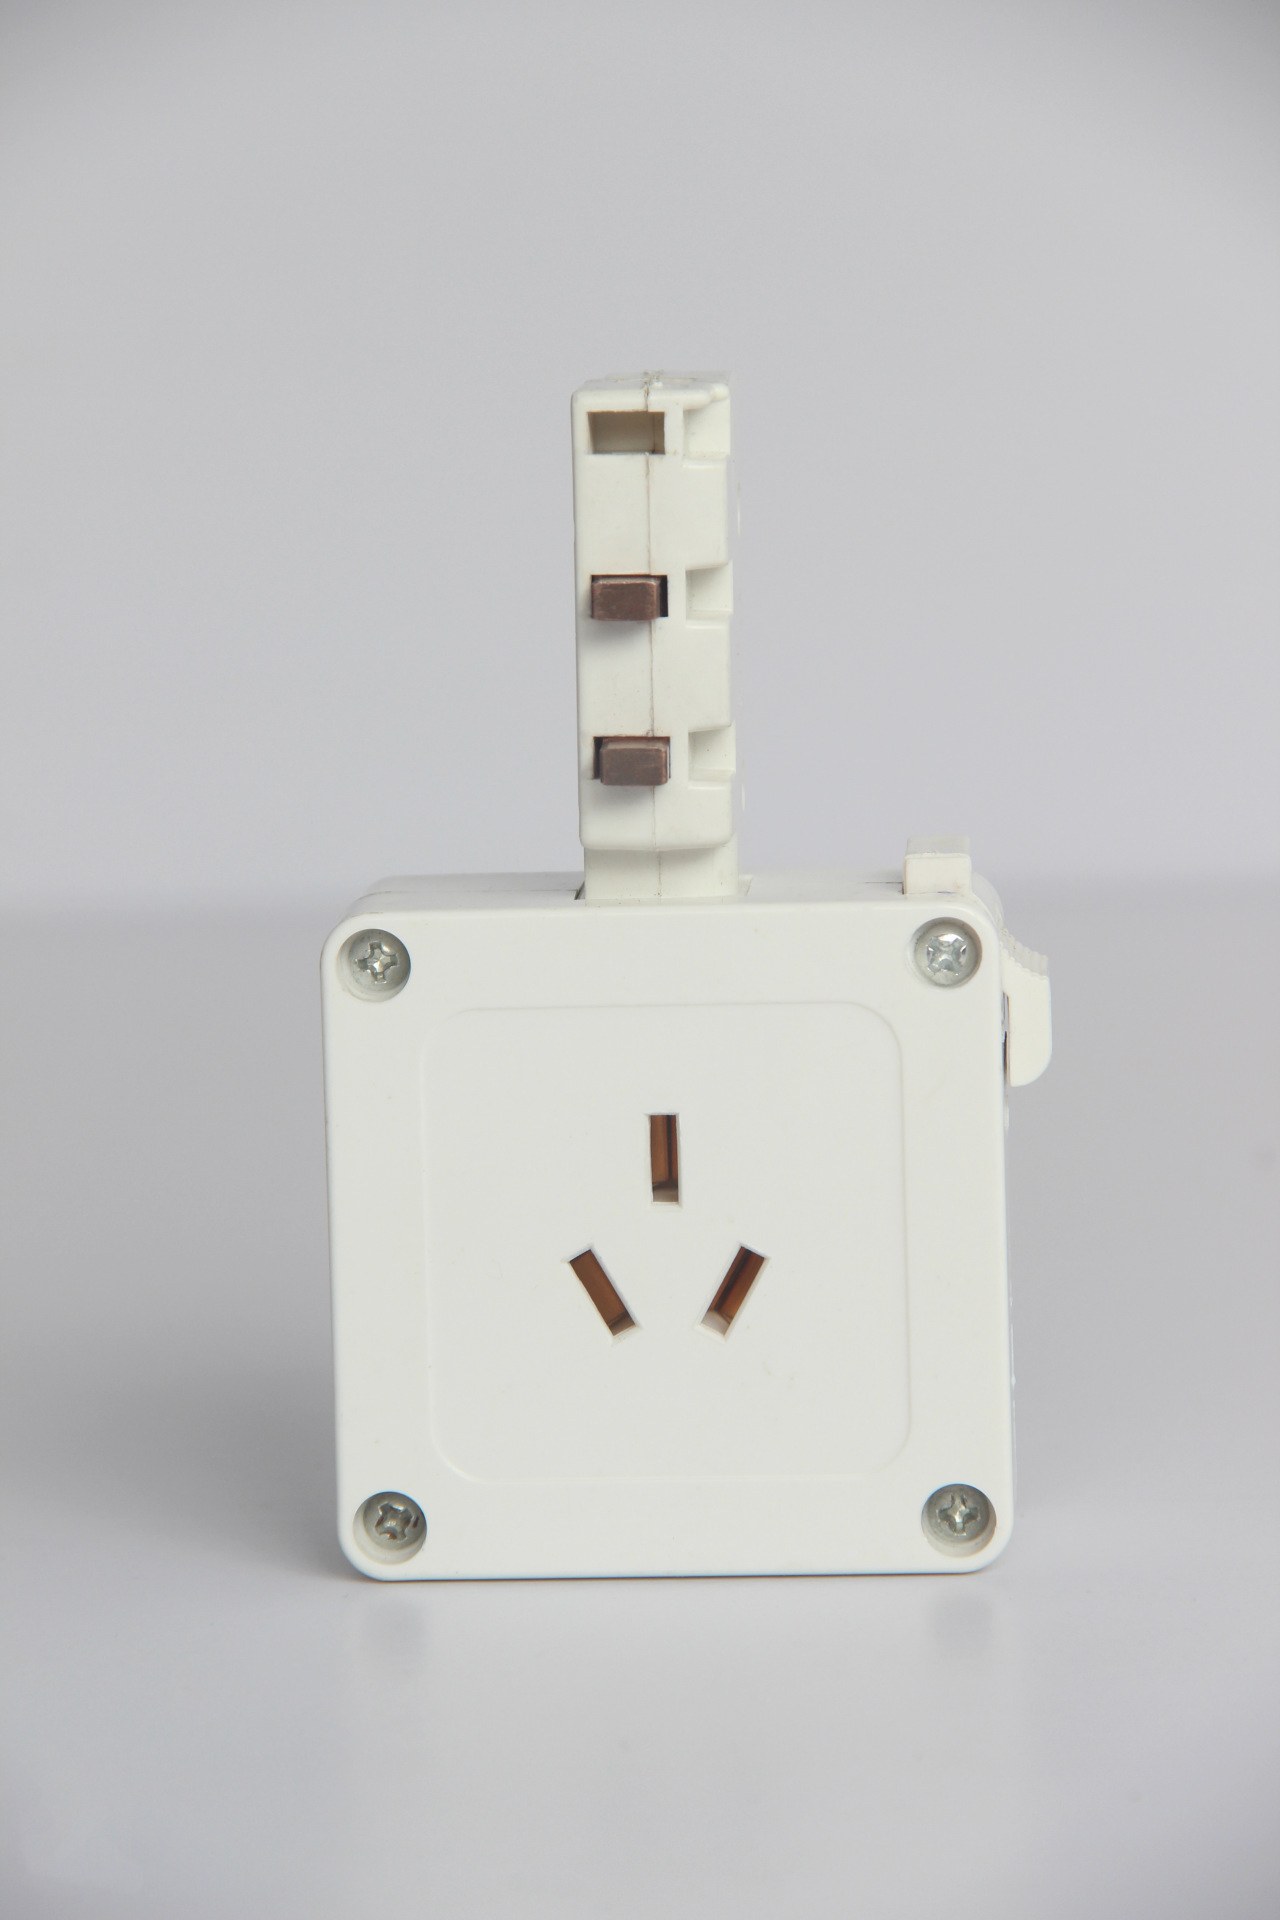 【图】pvc小型供电照明母线槽单相旋转插座服装厂供电设备插座厂家直